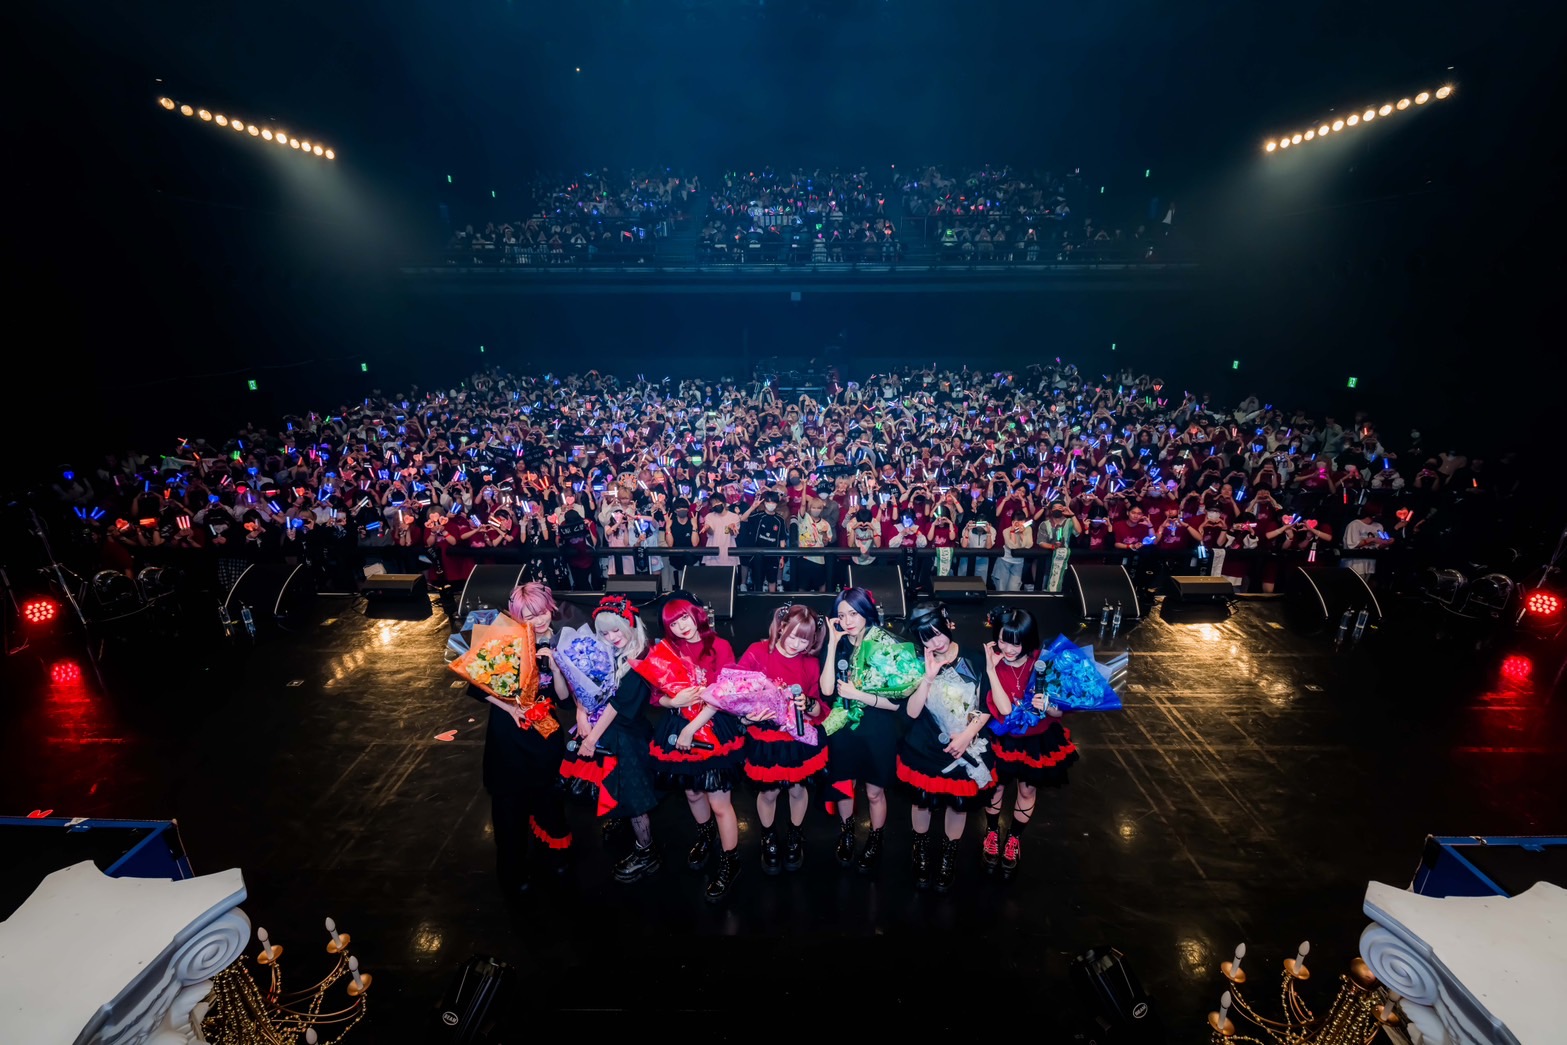 7人組アイドルグループAVAMの1周年記念“AVAM 1st Anniversary ONEMAN LIVE『R-Majesty』”KT Zepp Yokohamaにて開催されたライブの様子をレポートのサブ画像1